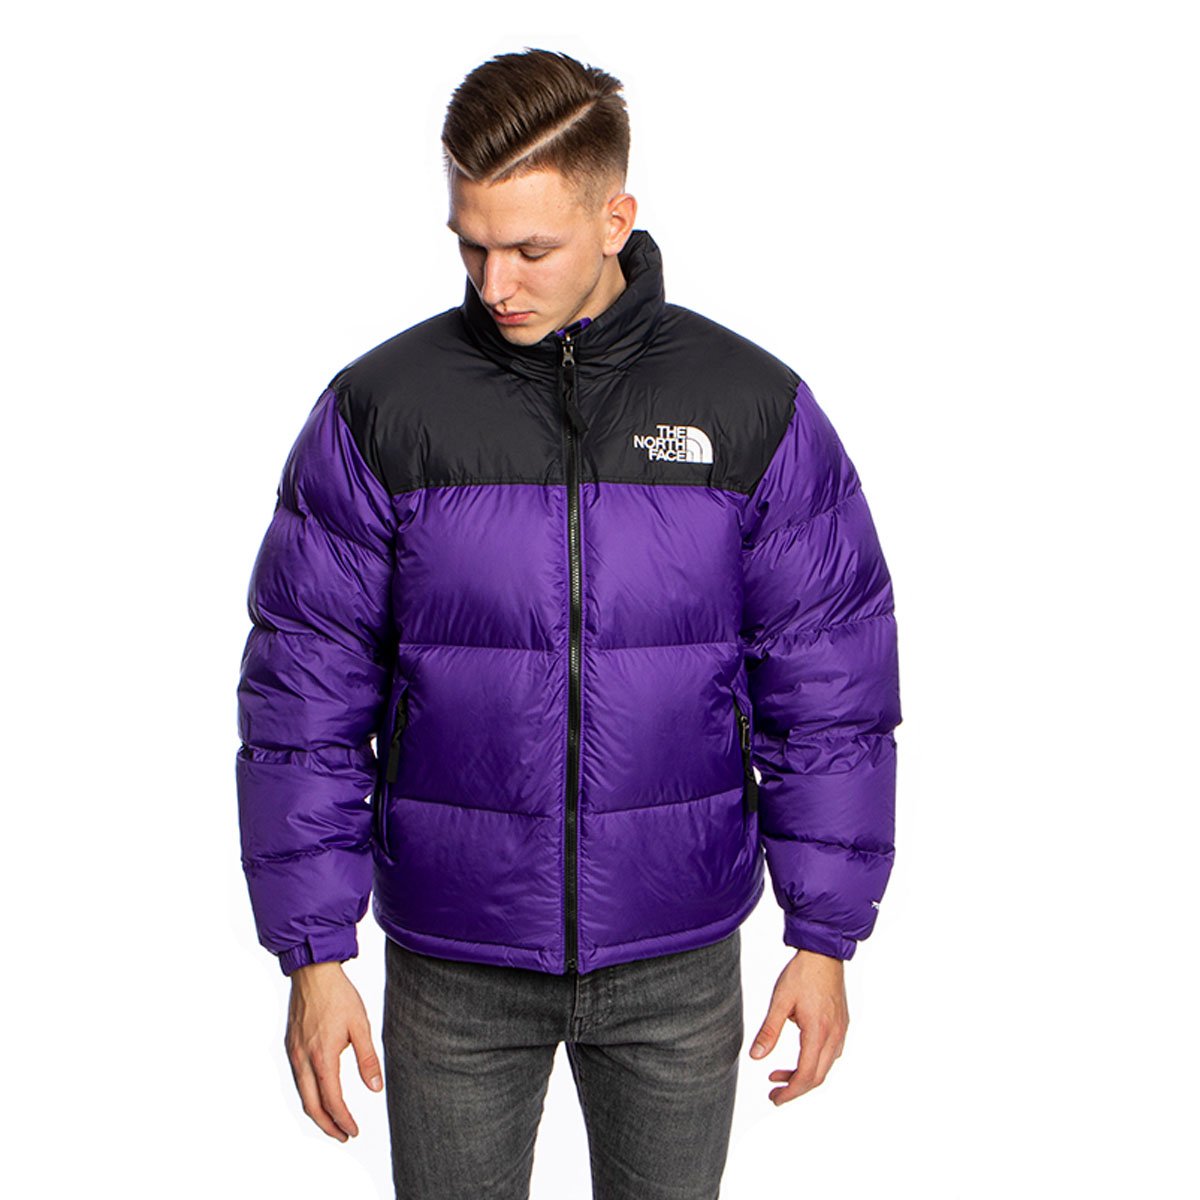 The North Face 1996 Retro Nuptse Jacket peak purple | Bludshop.com